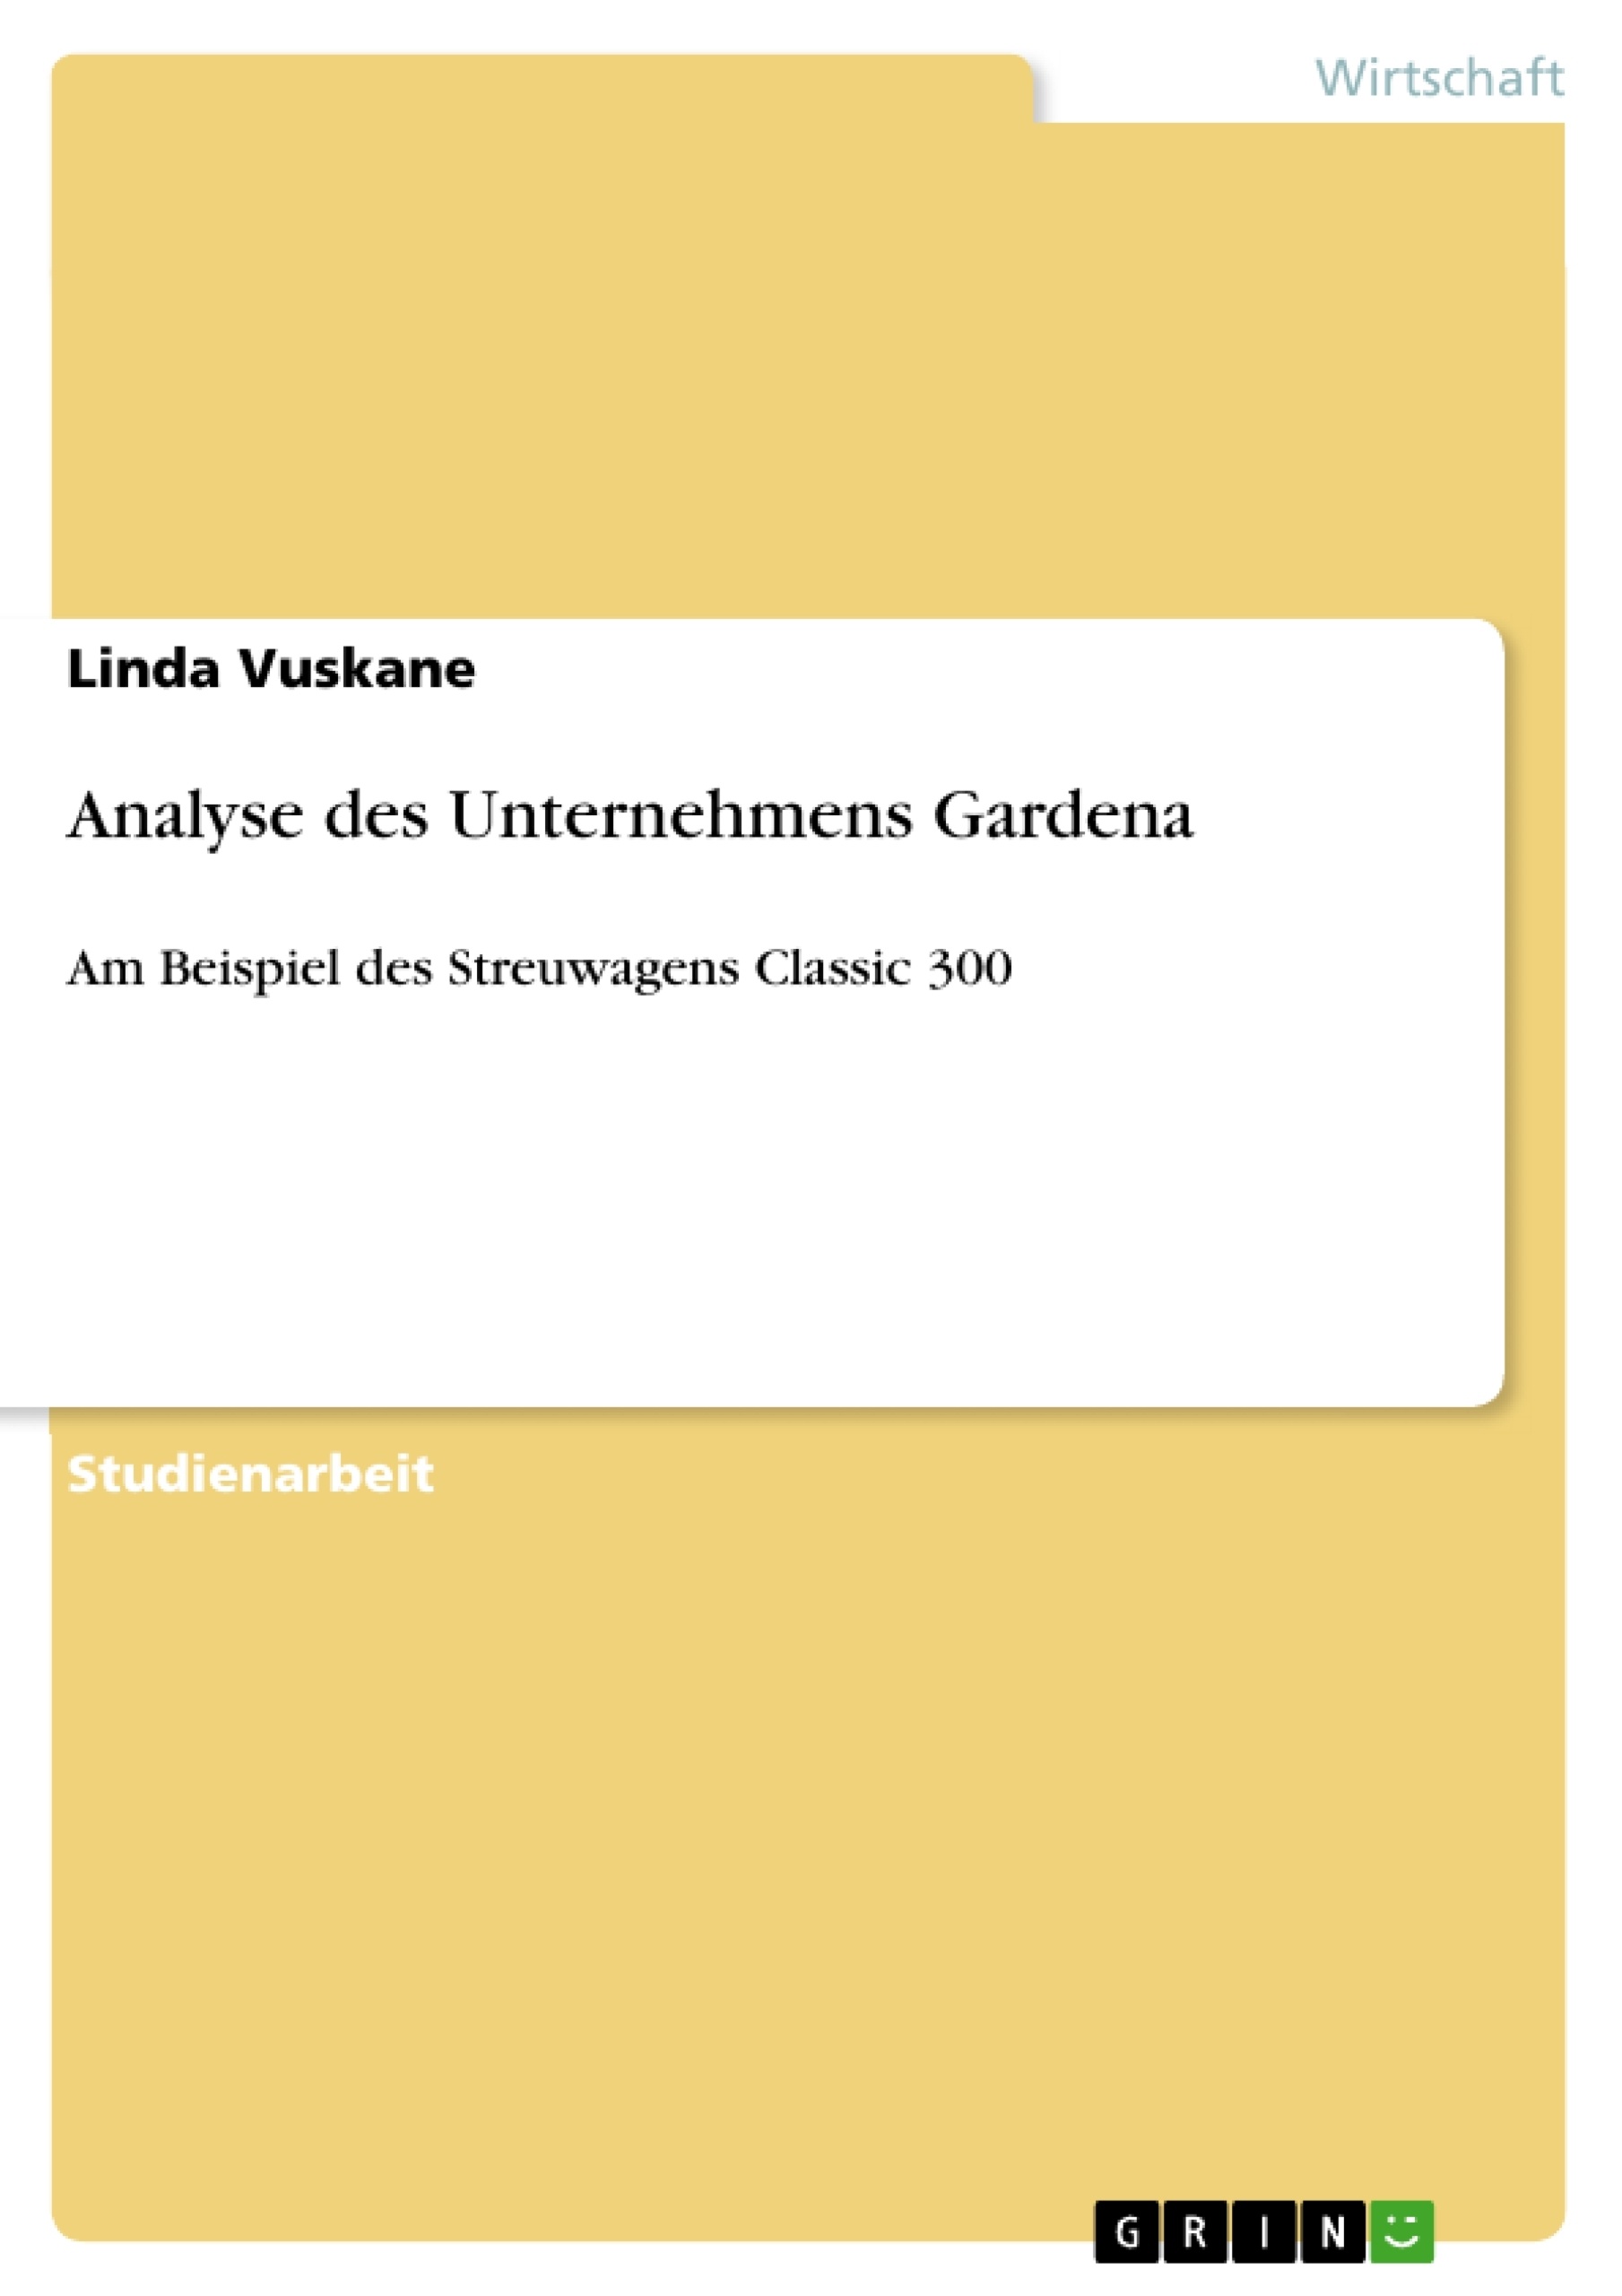 Título: Analyse des Unternehmens Gardena